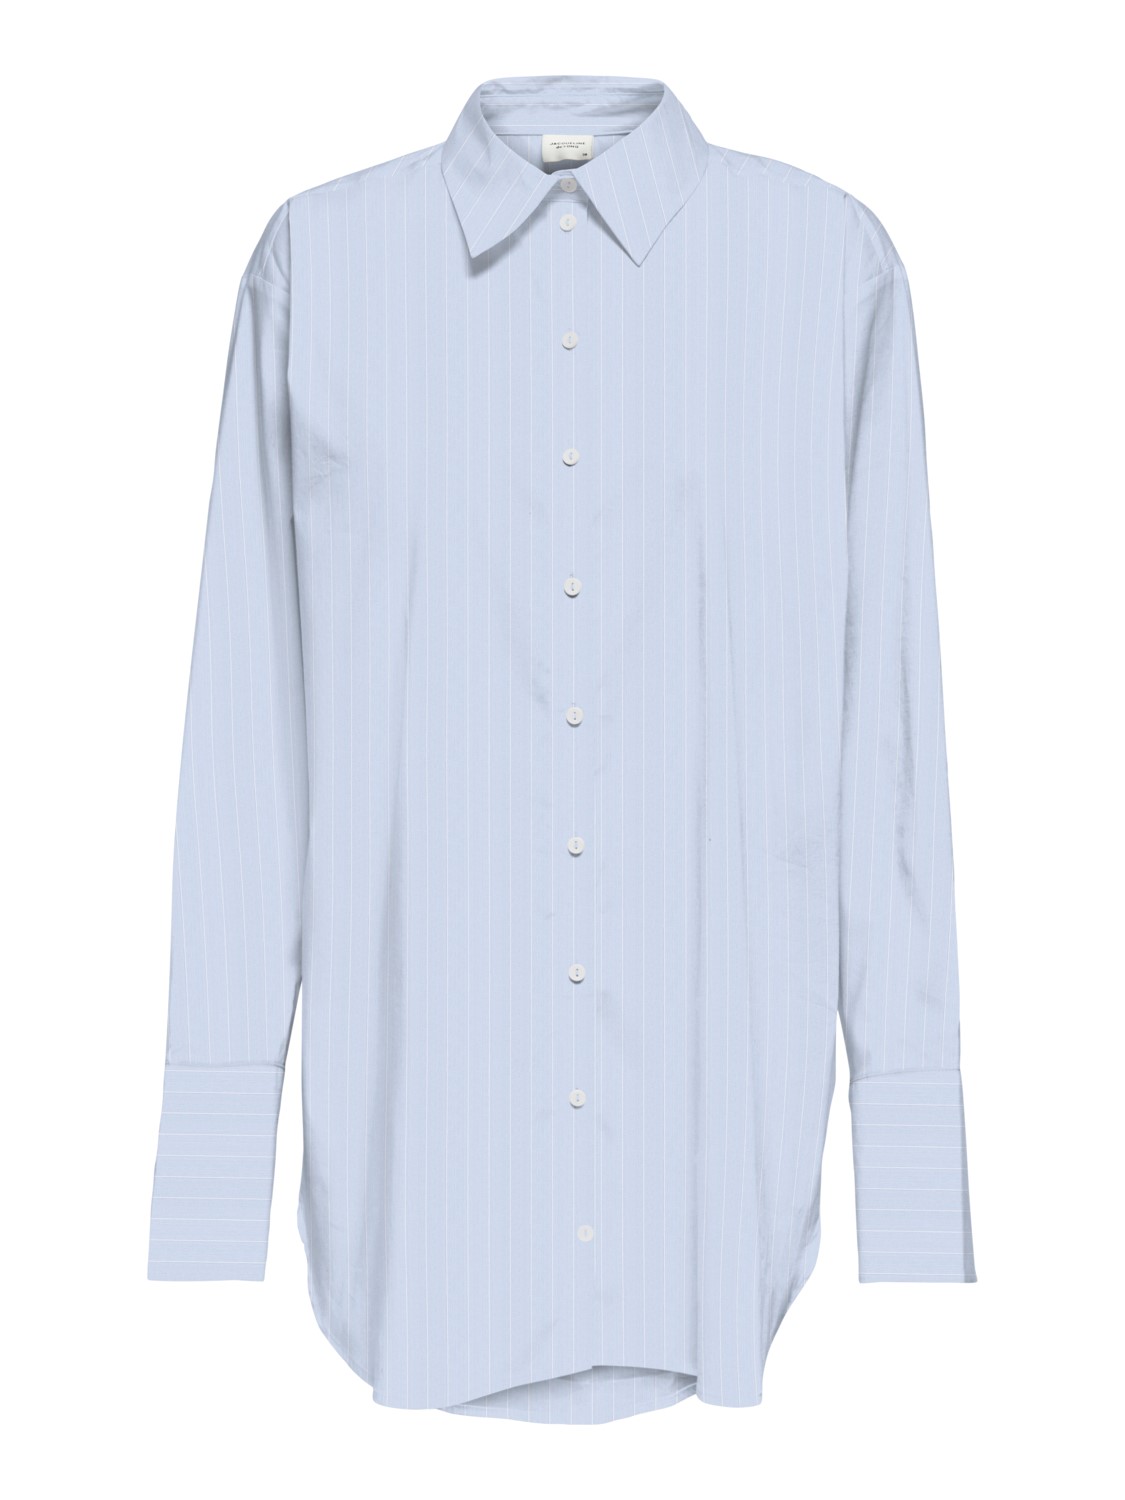 Блуза JACQUELINE de YONG Design Shirt Freizeit Hemd, синий блуза jacqueline de yong jacqueline de yong ja908ewznx57